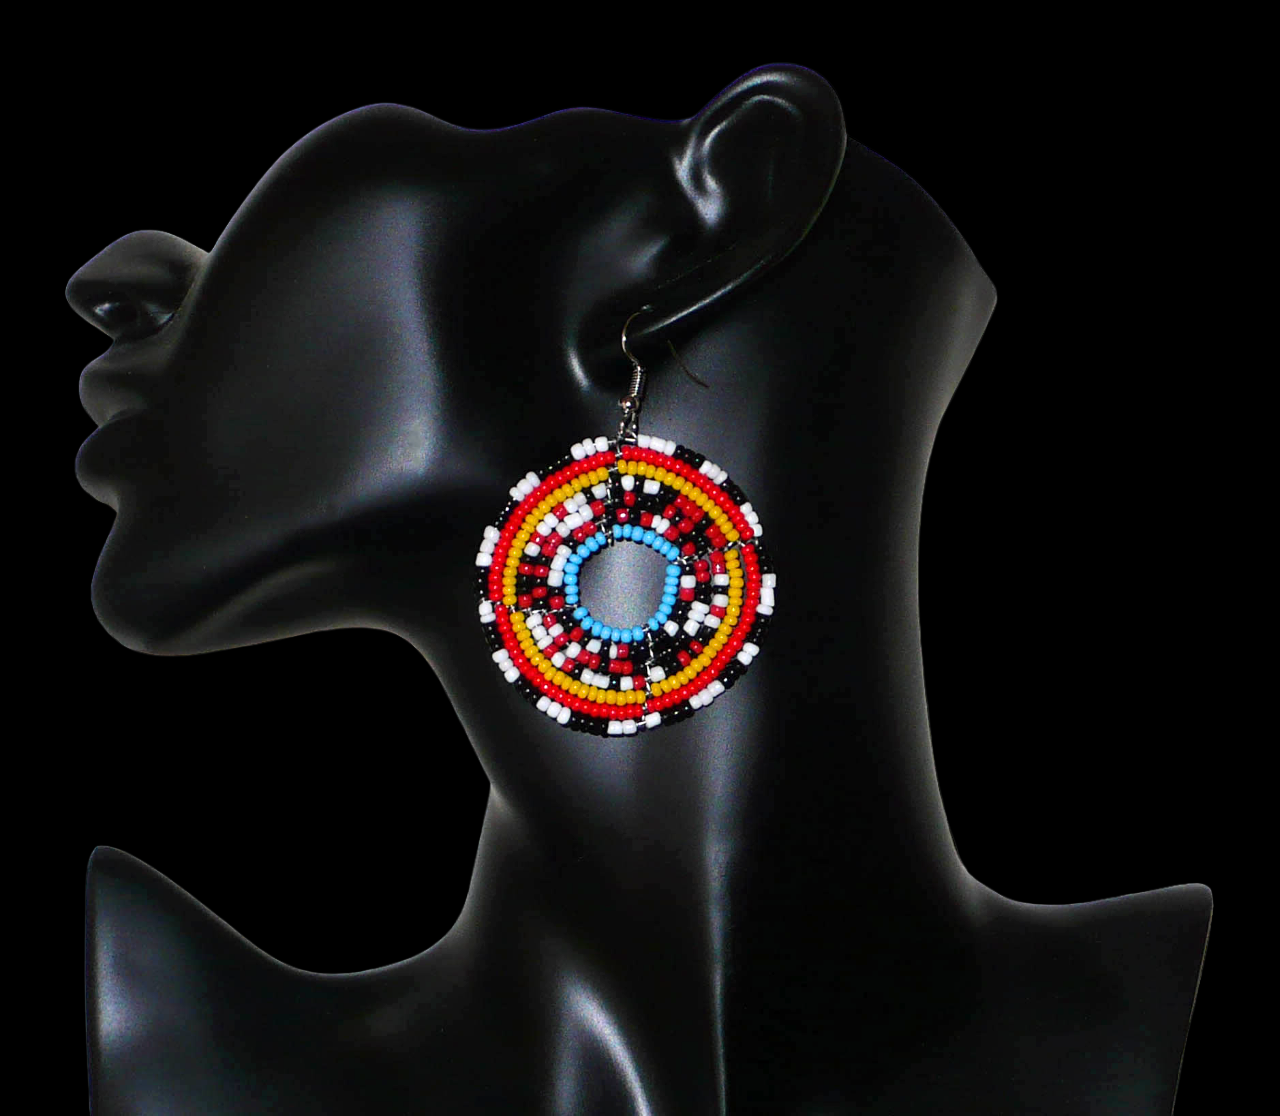 Boucles d'oreilles ethniques composées d'un mélange de perles de rocaille principalement rouges, noires, blanches et bleues montées en cercles. Elles mesurent 6,5 cm de long et 5 cm de large et se portent sur des oreilles percées.